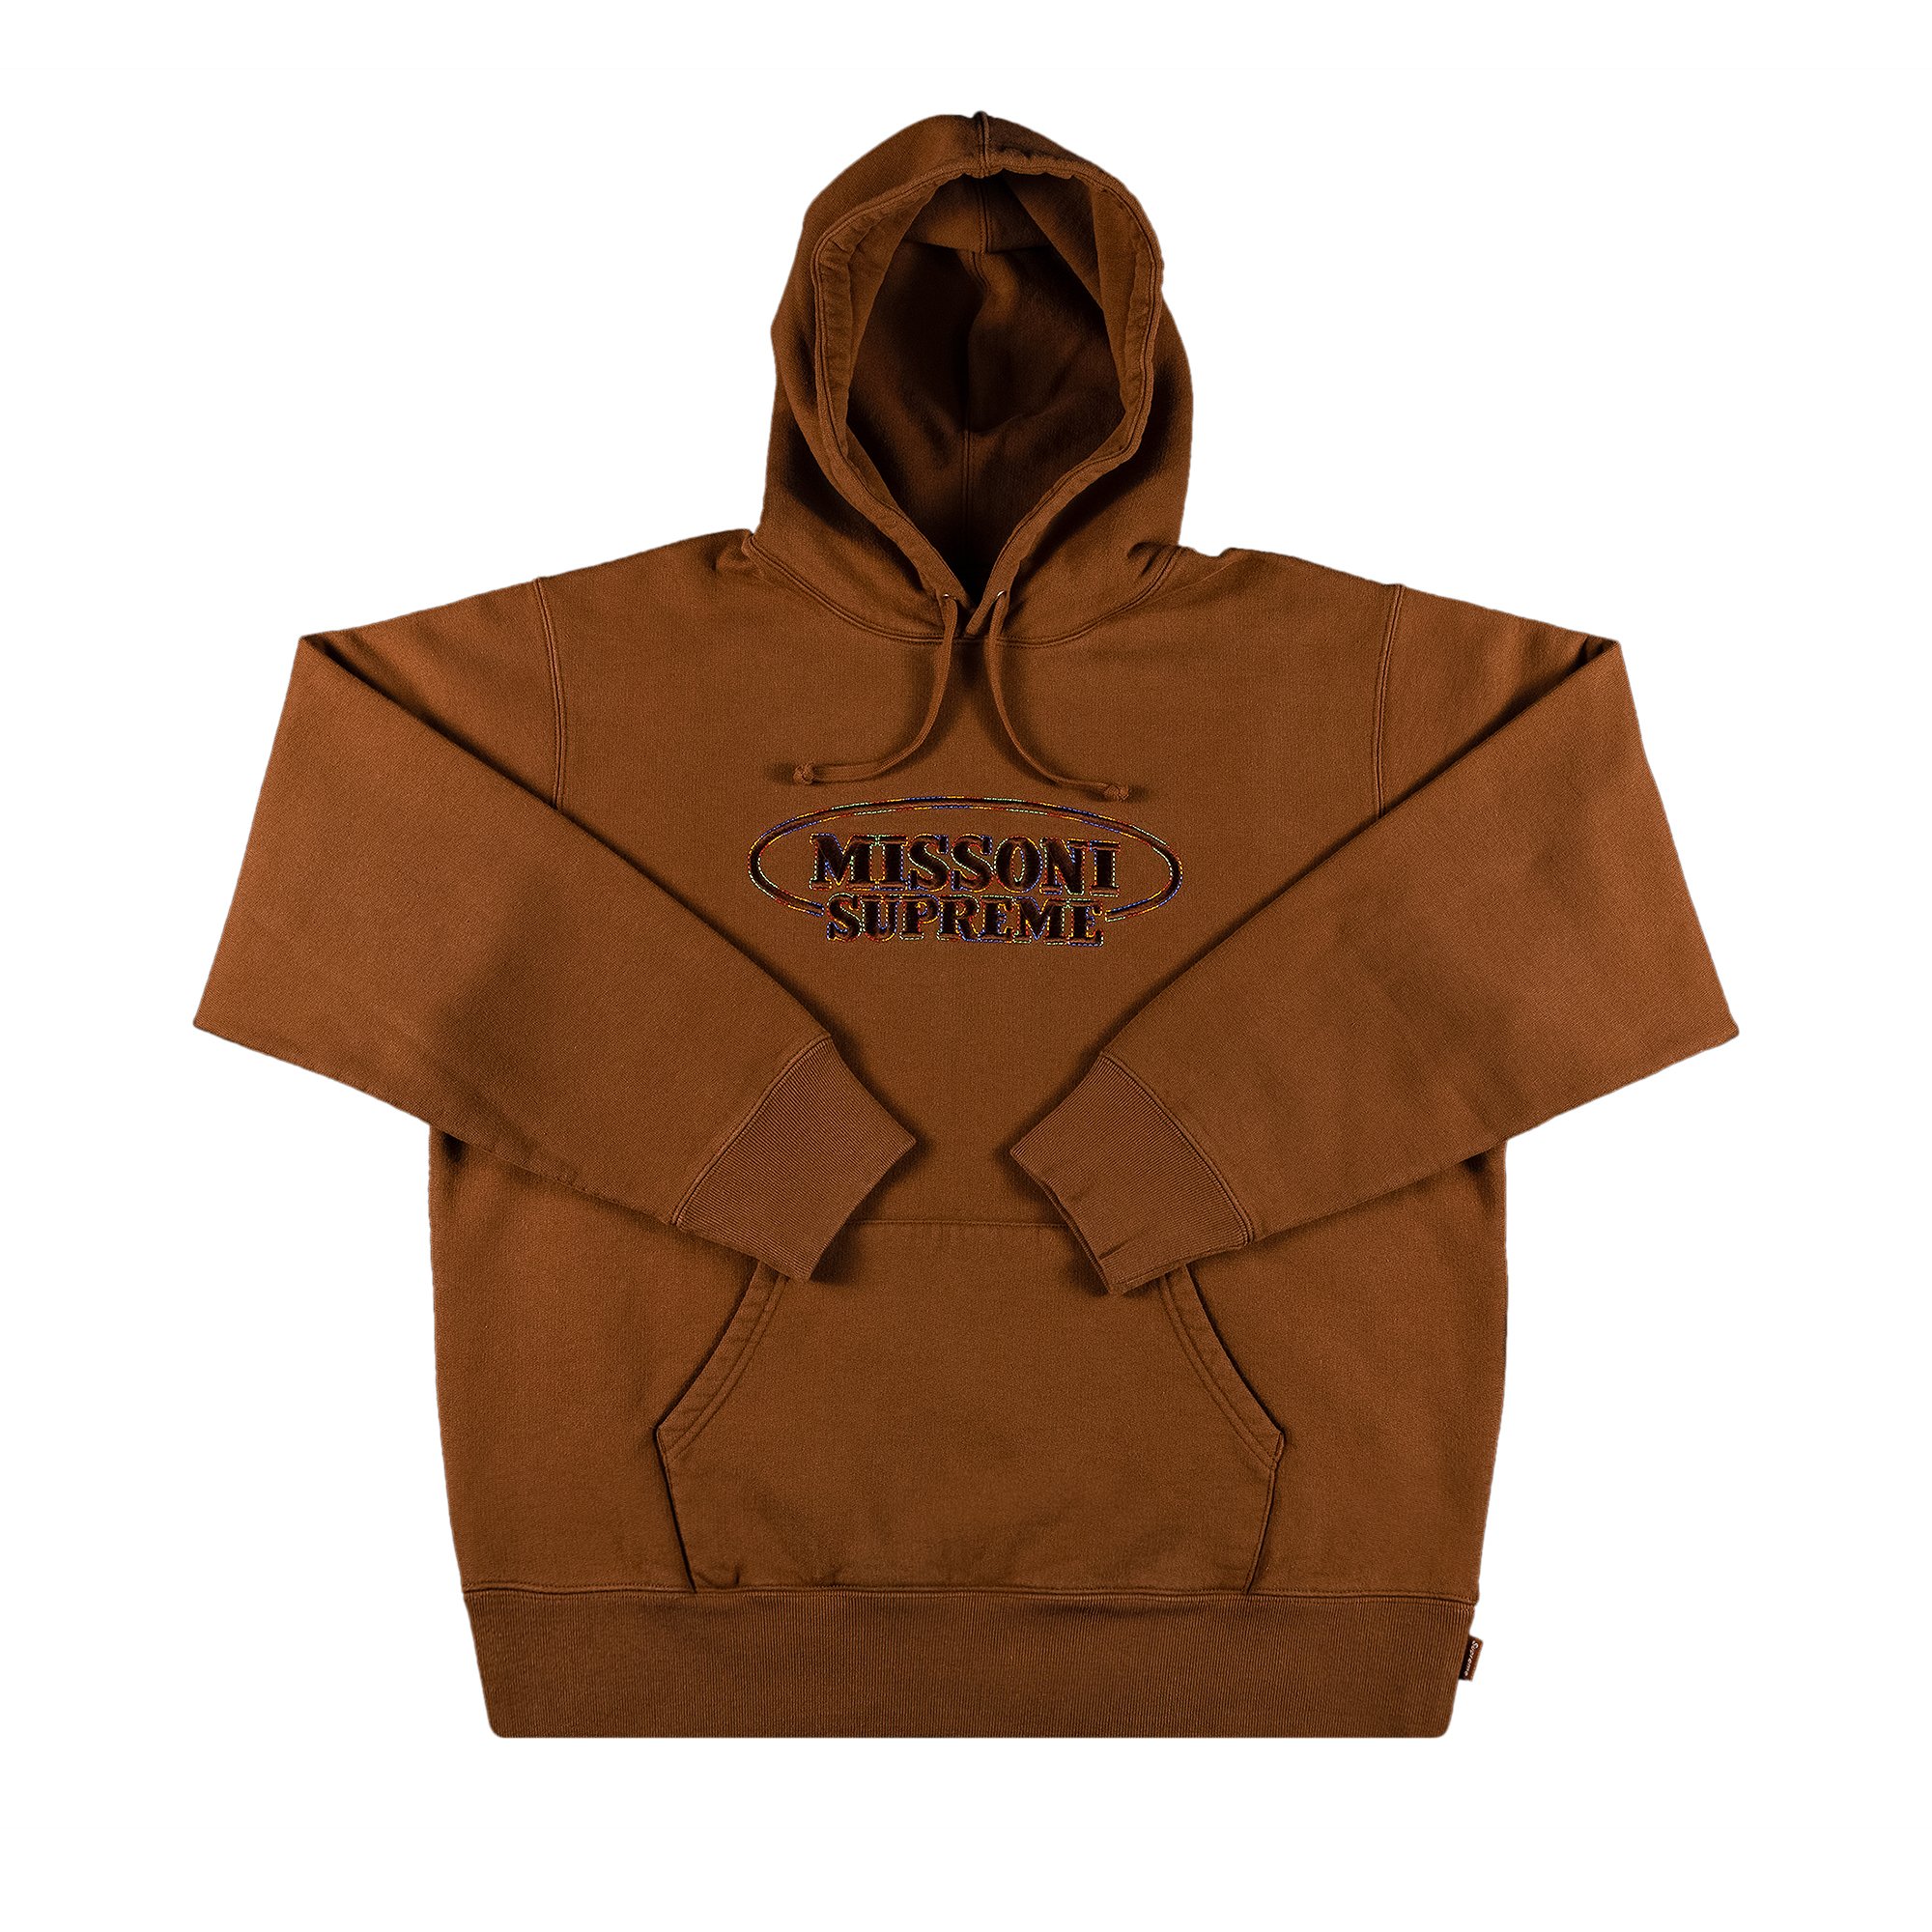 Buy Supreme x Missoni Hooded Sweatshirt 'Brown' - FW21SW95 BROWN